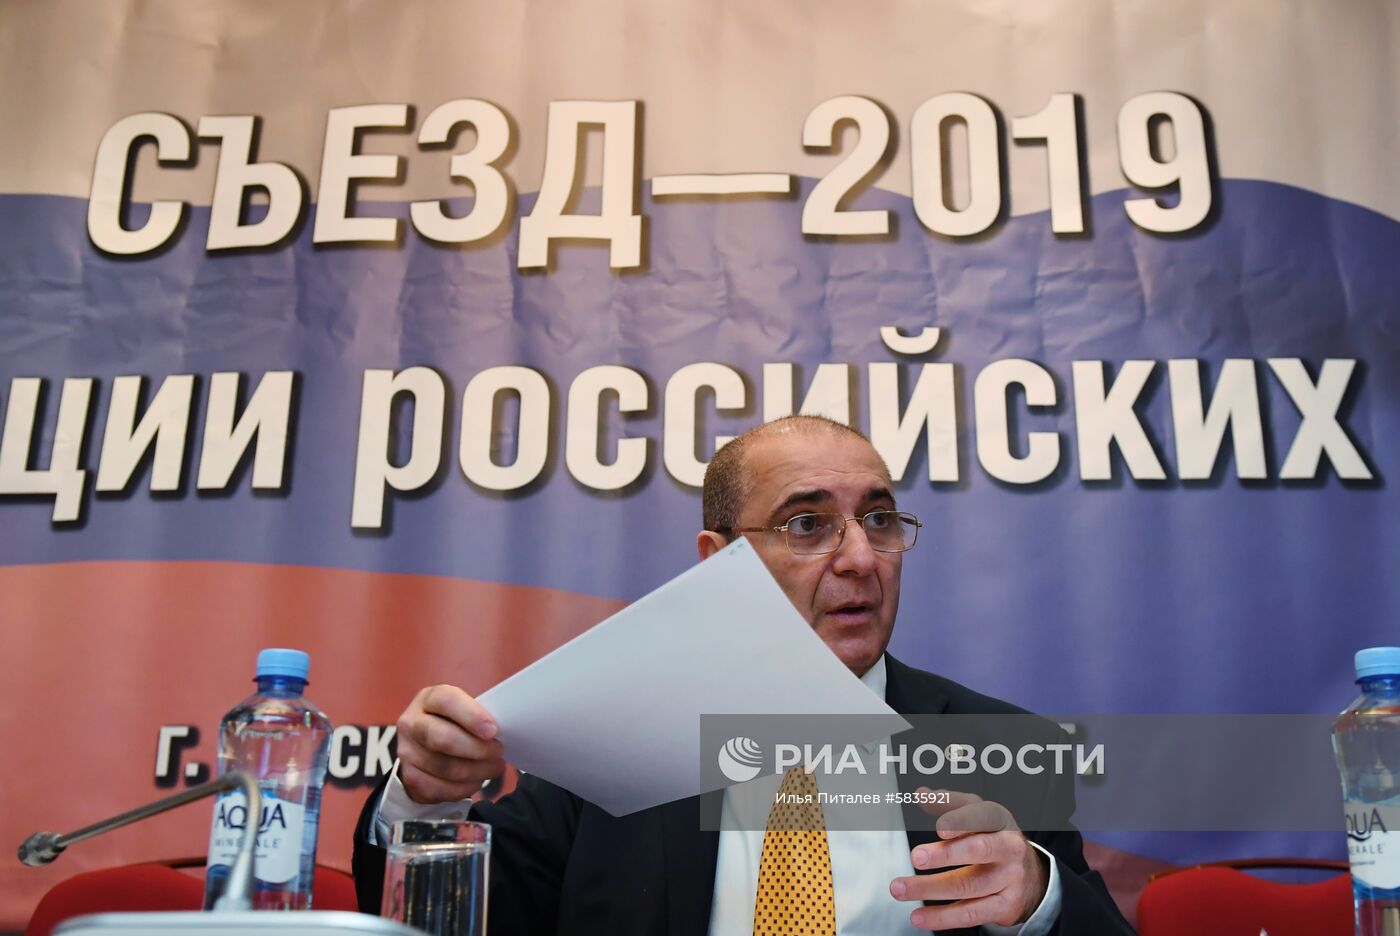 Съезд Ассоциации российских банков